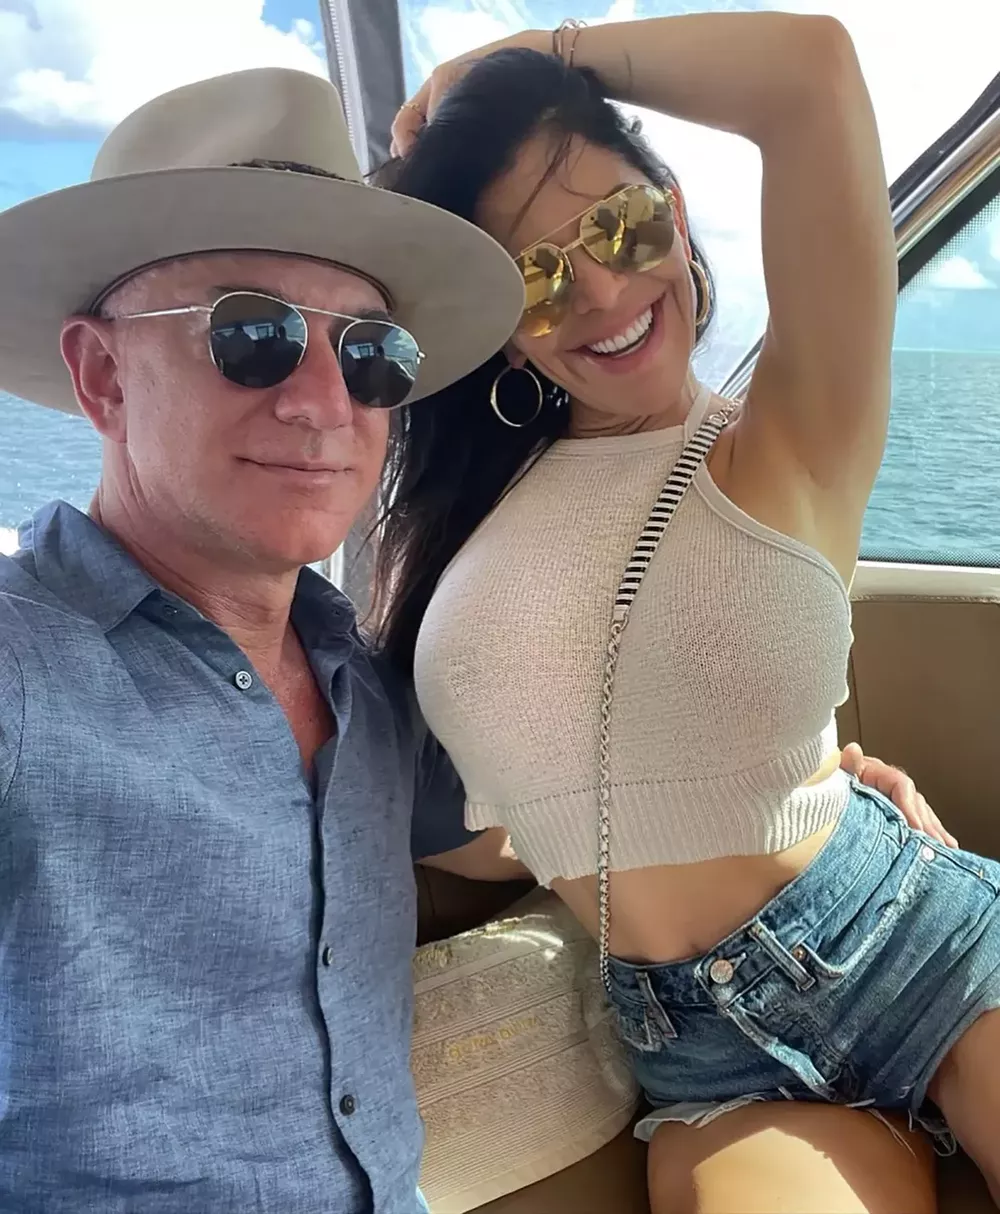 Джеффа Безоса и его возлюбленную Лорен Санчес заметили на свидании в Майами